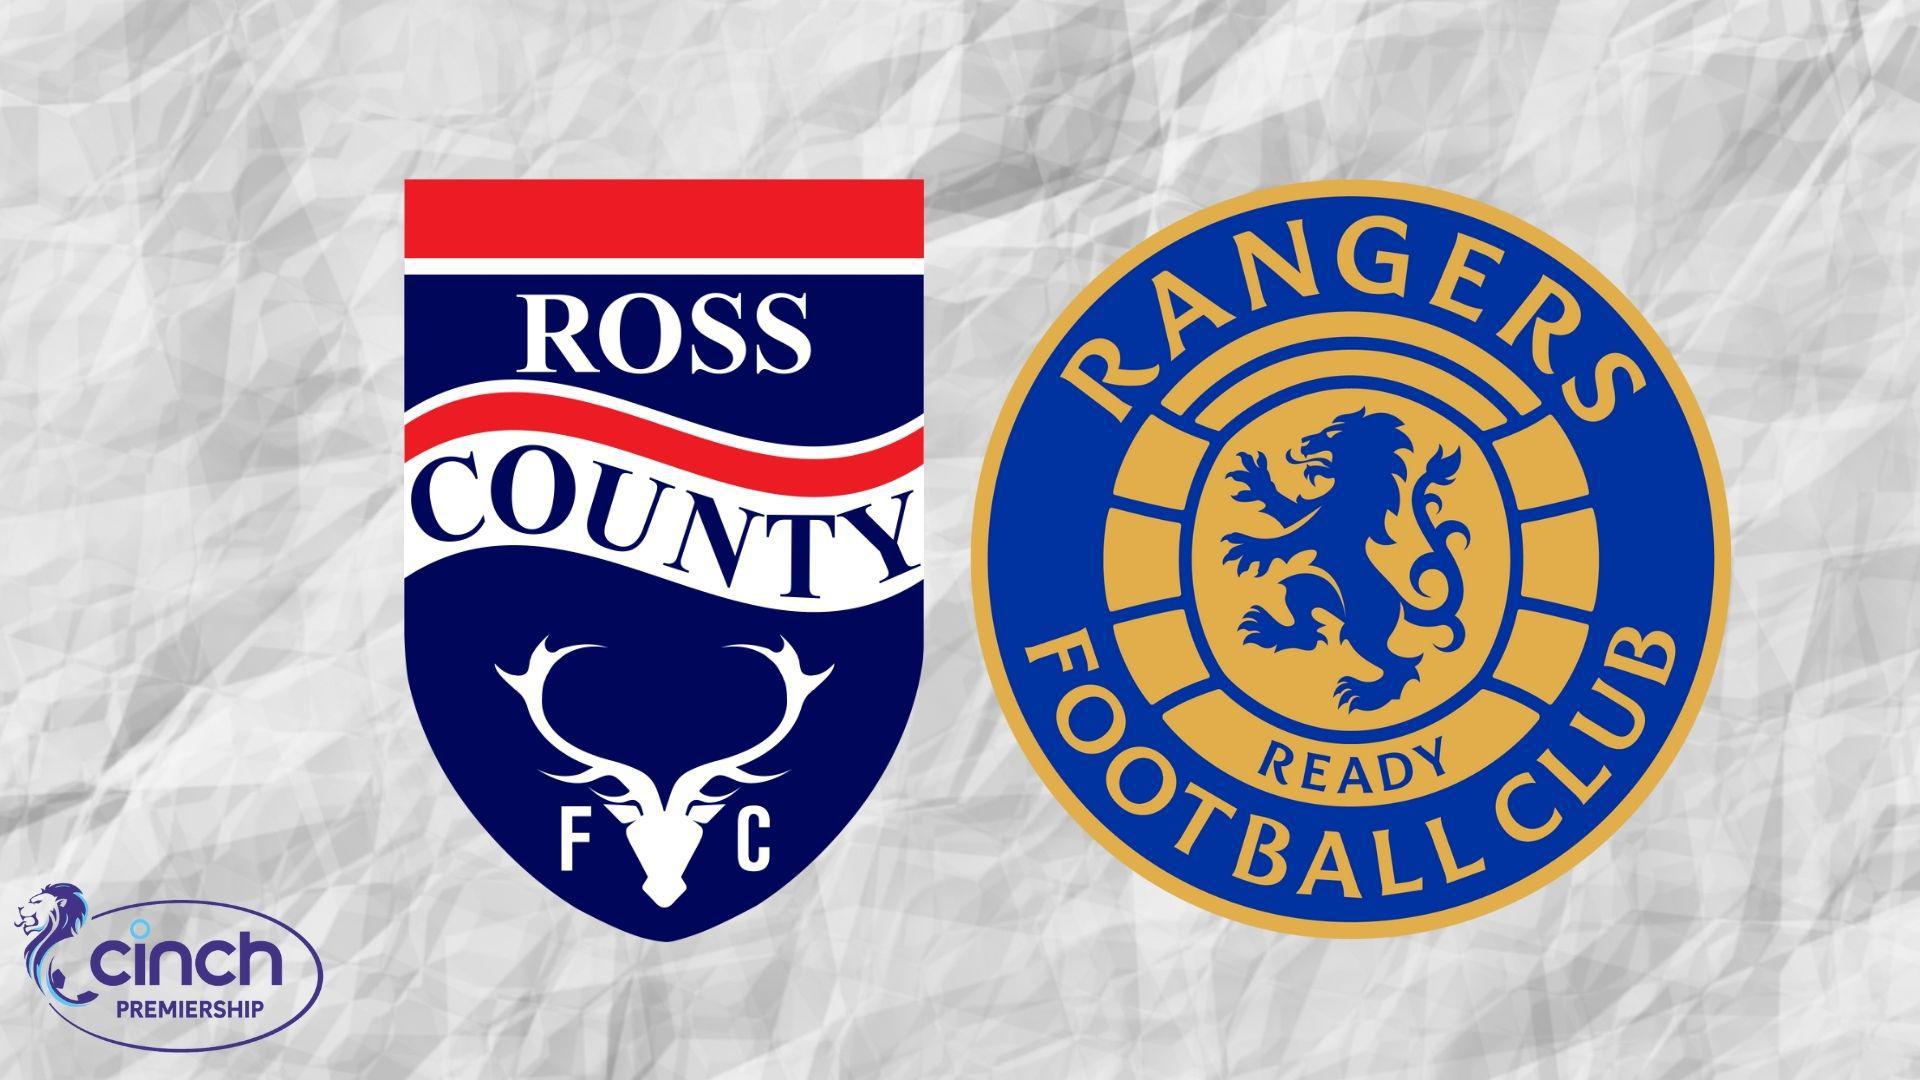 Ross county vs rangers